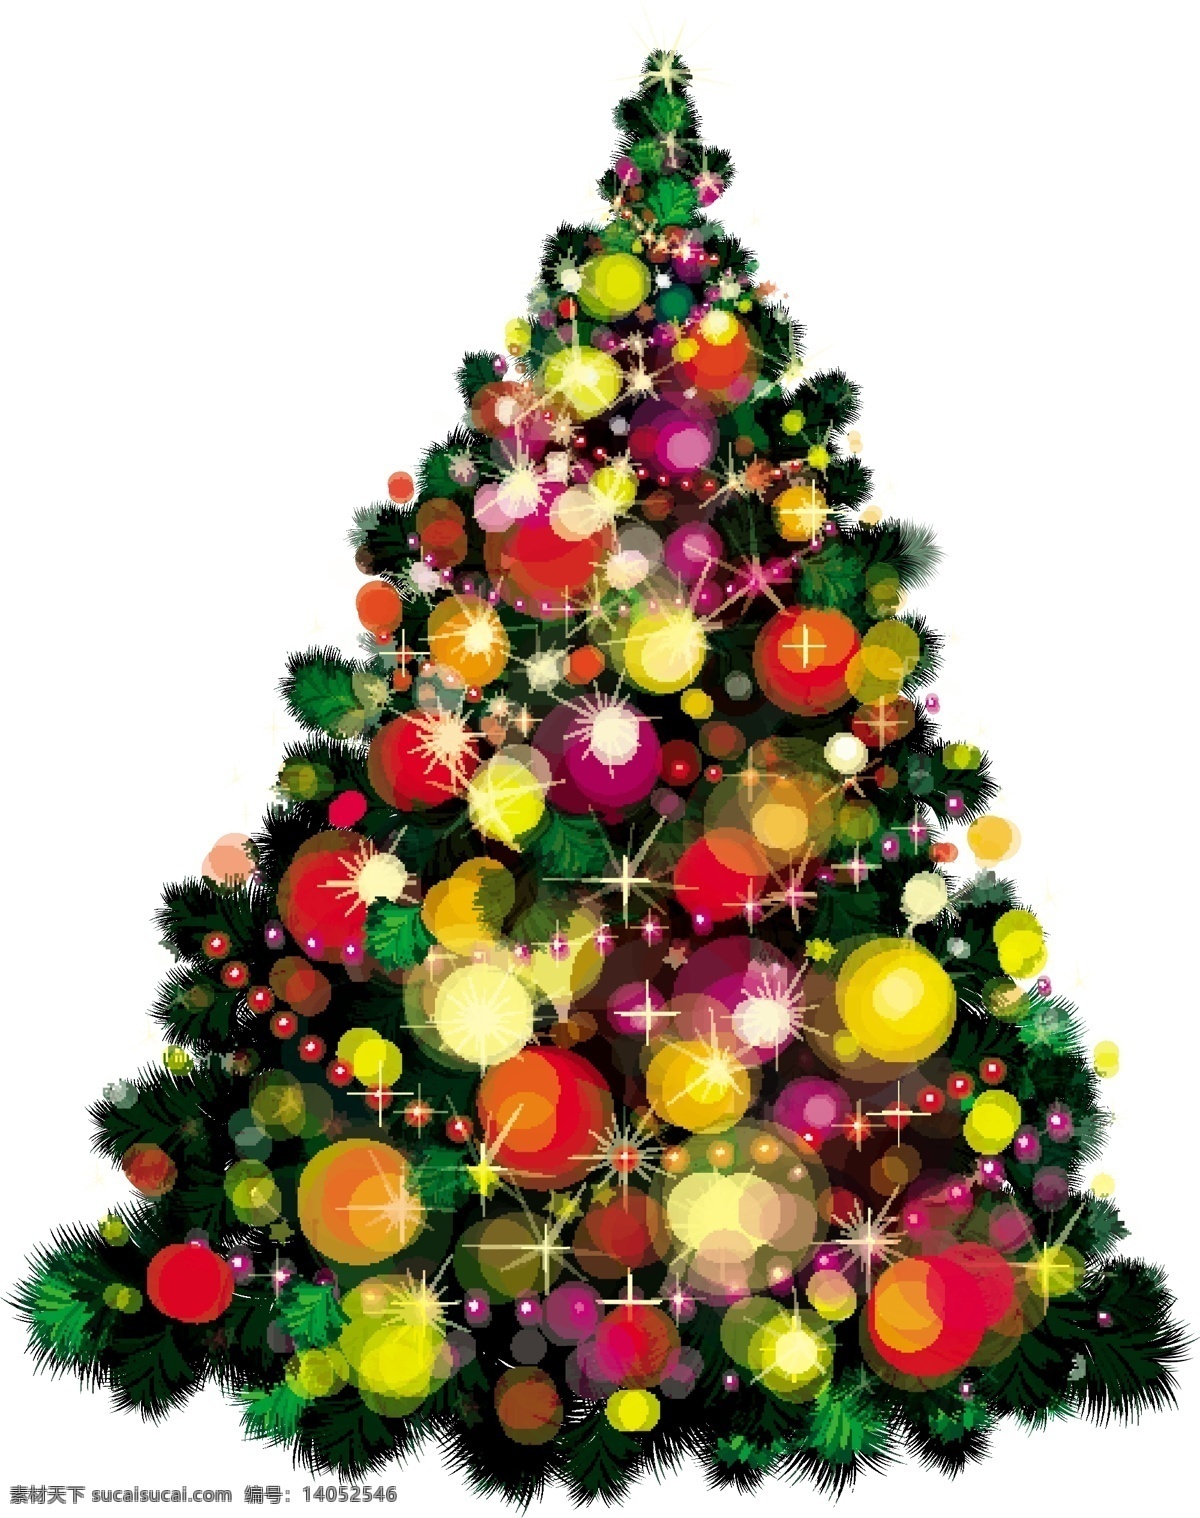 圣诞树 装饰 生动 元素 圣诞 圣诞节 饰品 装饰品 矢量节日 psd圣诞树 节日素材 其他节日